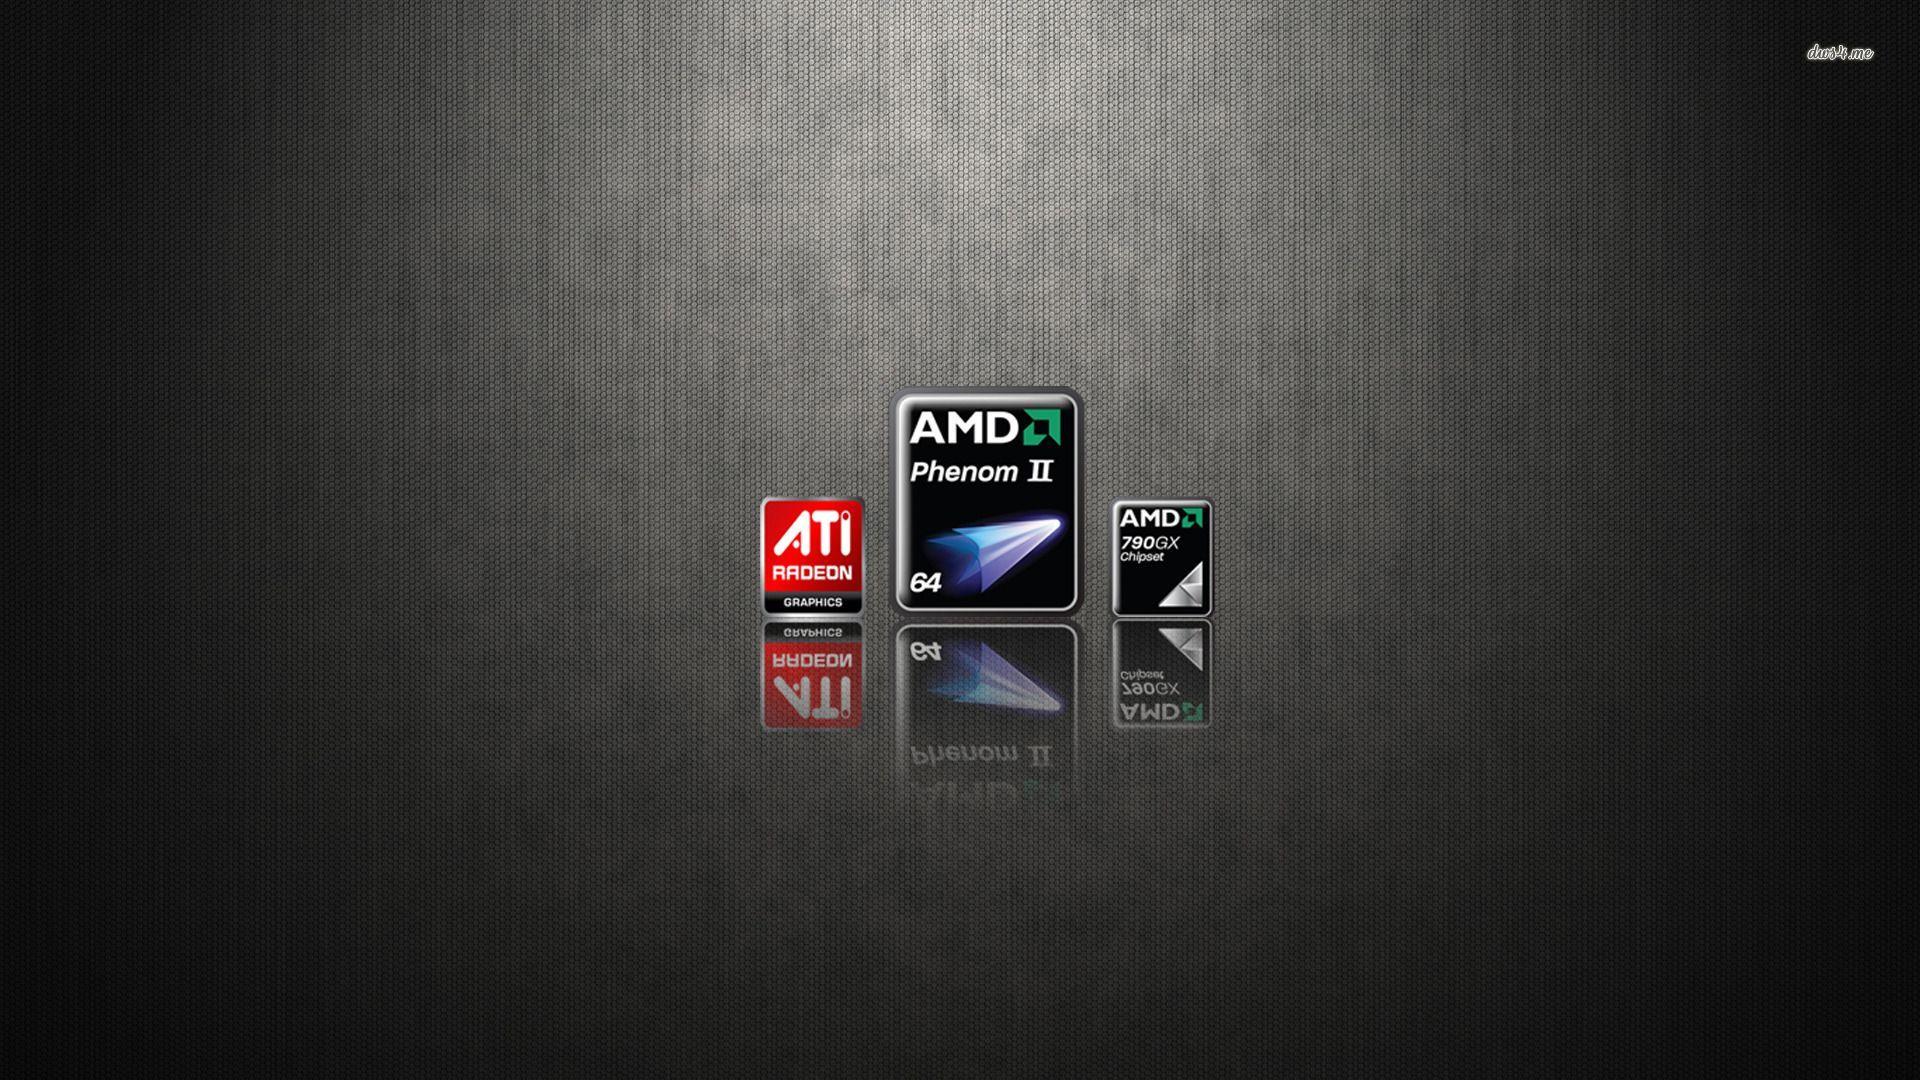 AMD wallpaper wallpaper - #